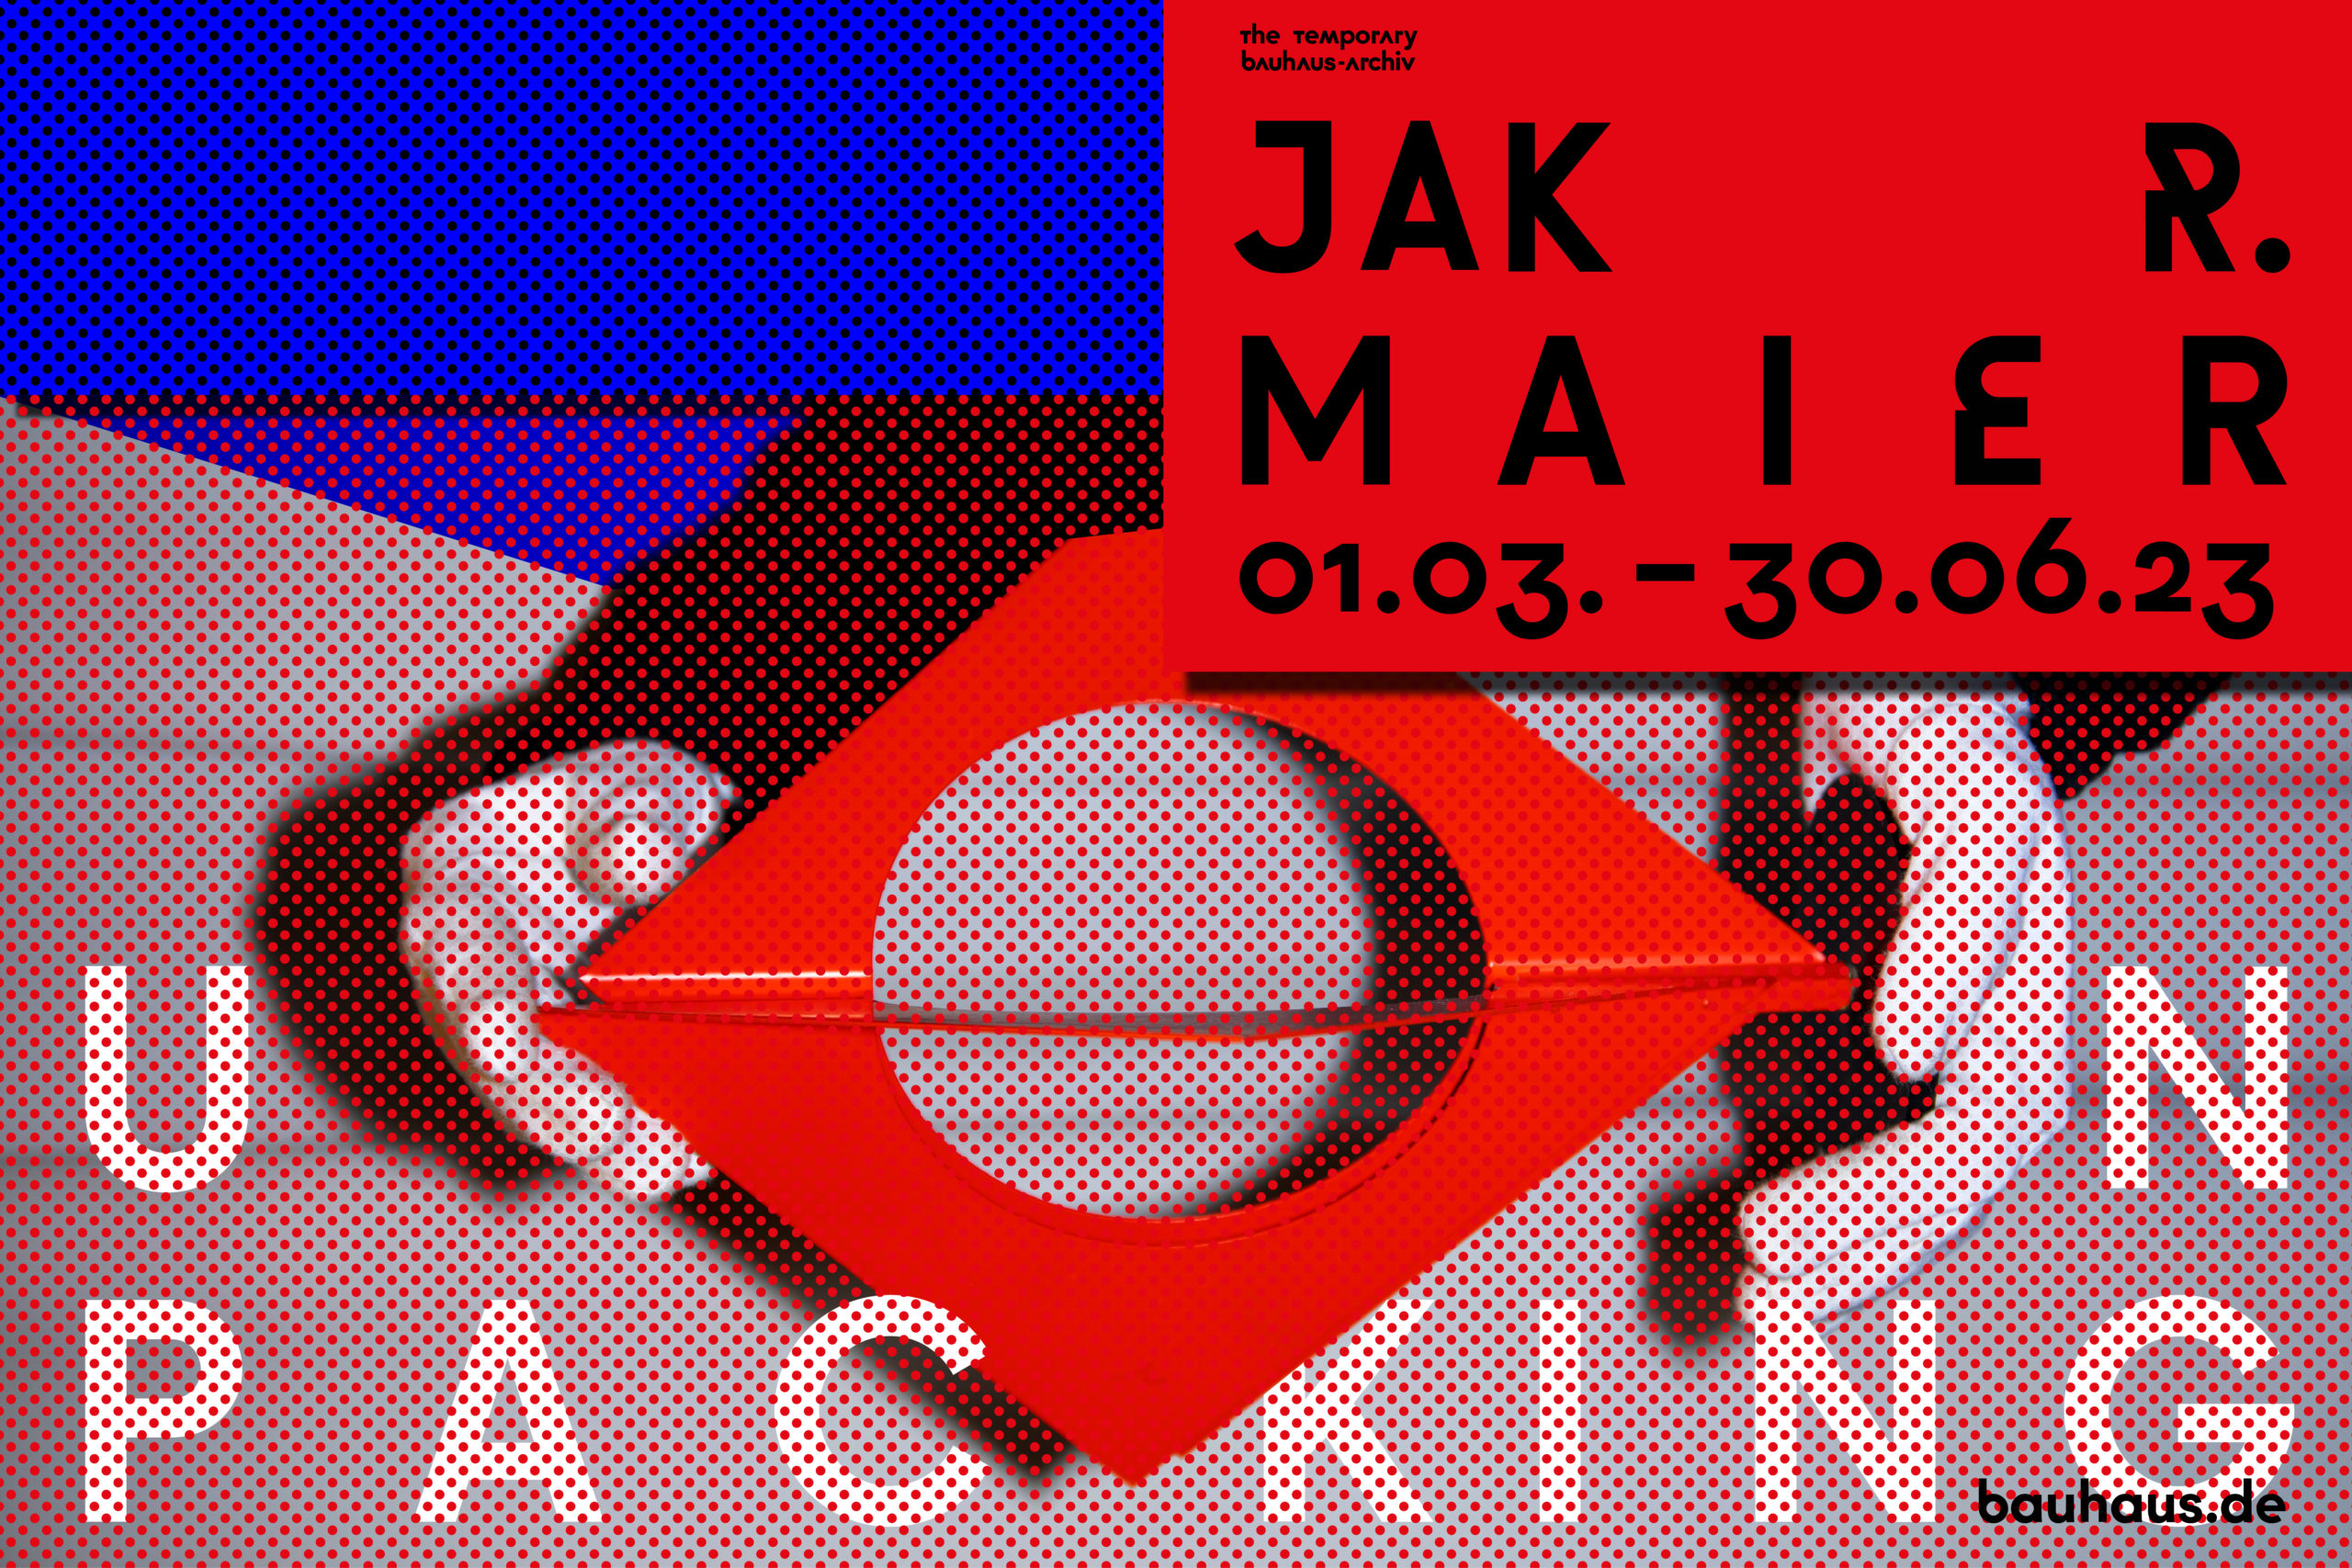 Die Ausstellung "Unpacking Jak R. Maier" ist bis Ende Juni im Bauhaus-Archiv zu sehen. Grafik: Bauhaus-Archiv